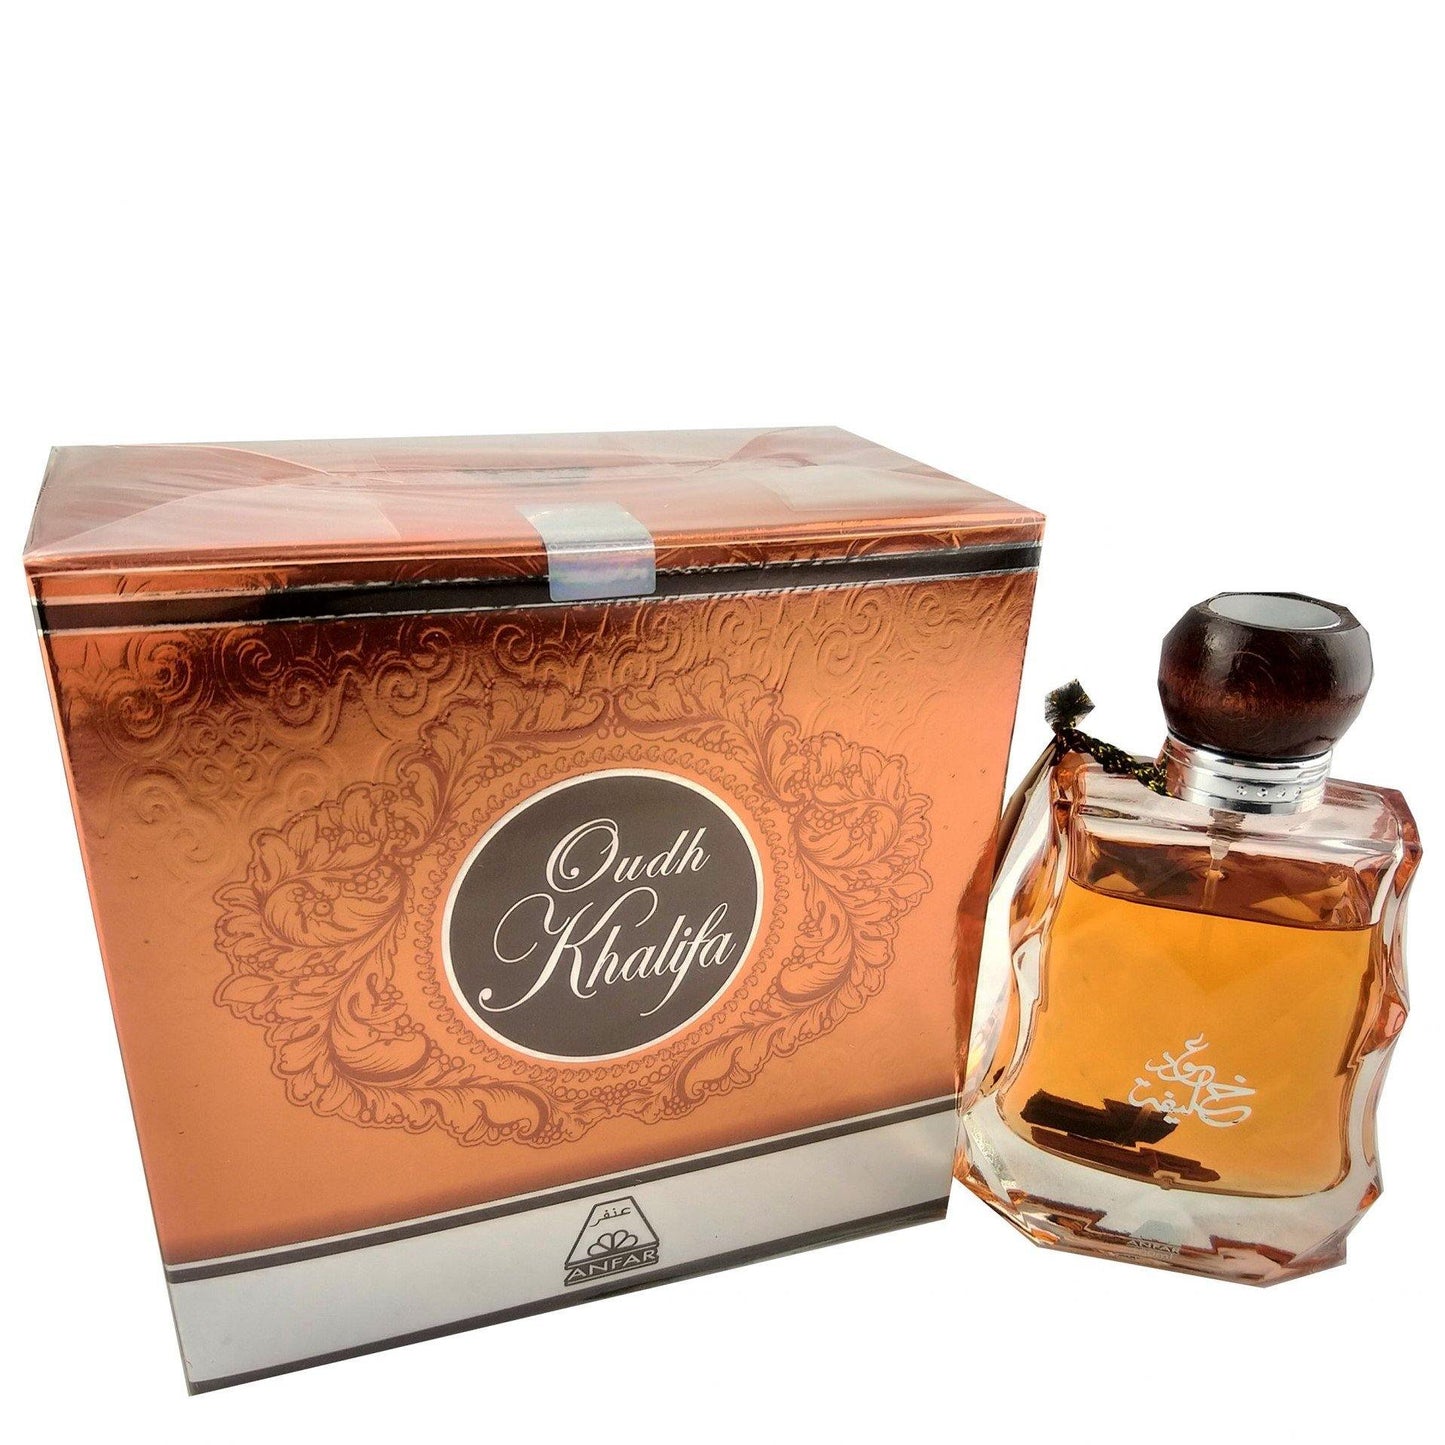 100 ml Eau de Perfume Oud Khalifa cu Arome Floral-Lemnoase de Oud și Mosc pentru Bărbați - Bijuterii TV